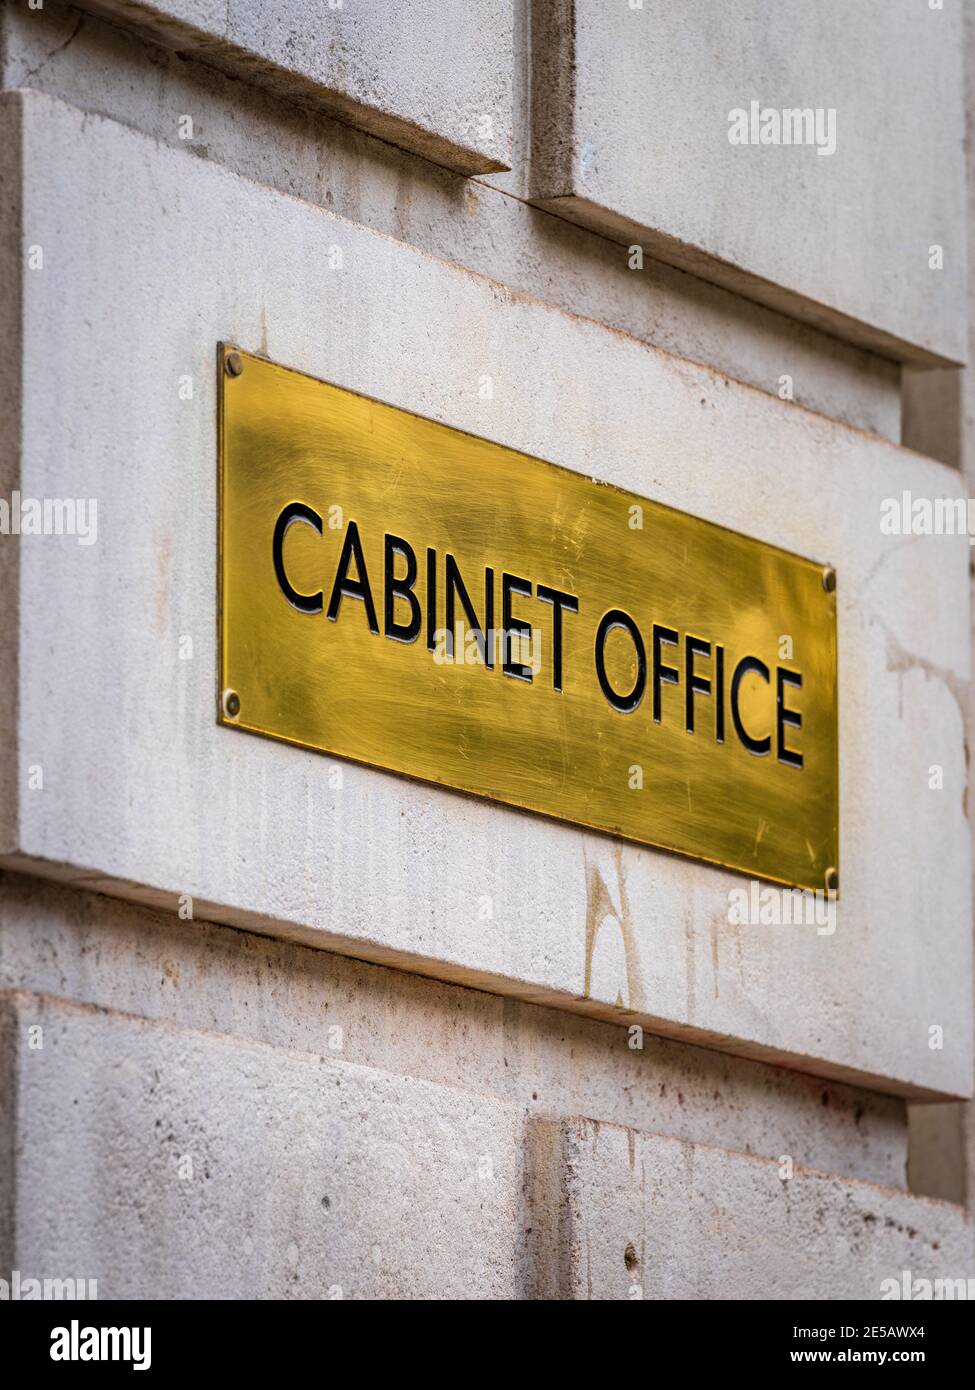 Oficina del Gabinete Whitehall Londres - señal de bronce en la entrada de la Oficina del Gabinete del Gobierno Británico en Whitehall, centro de Londres. Foto de stock